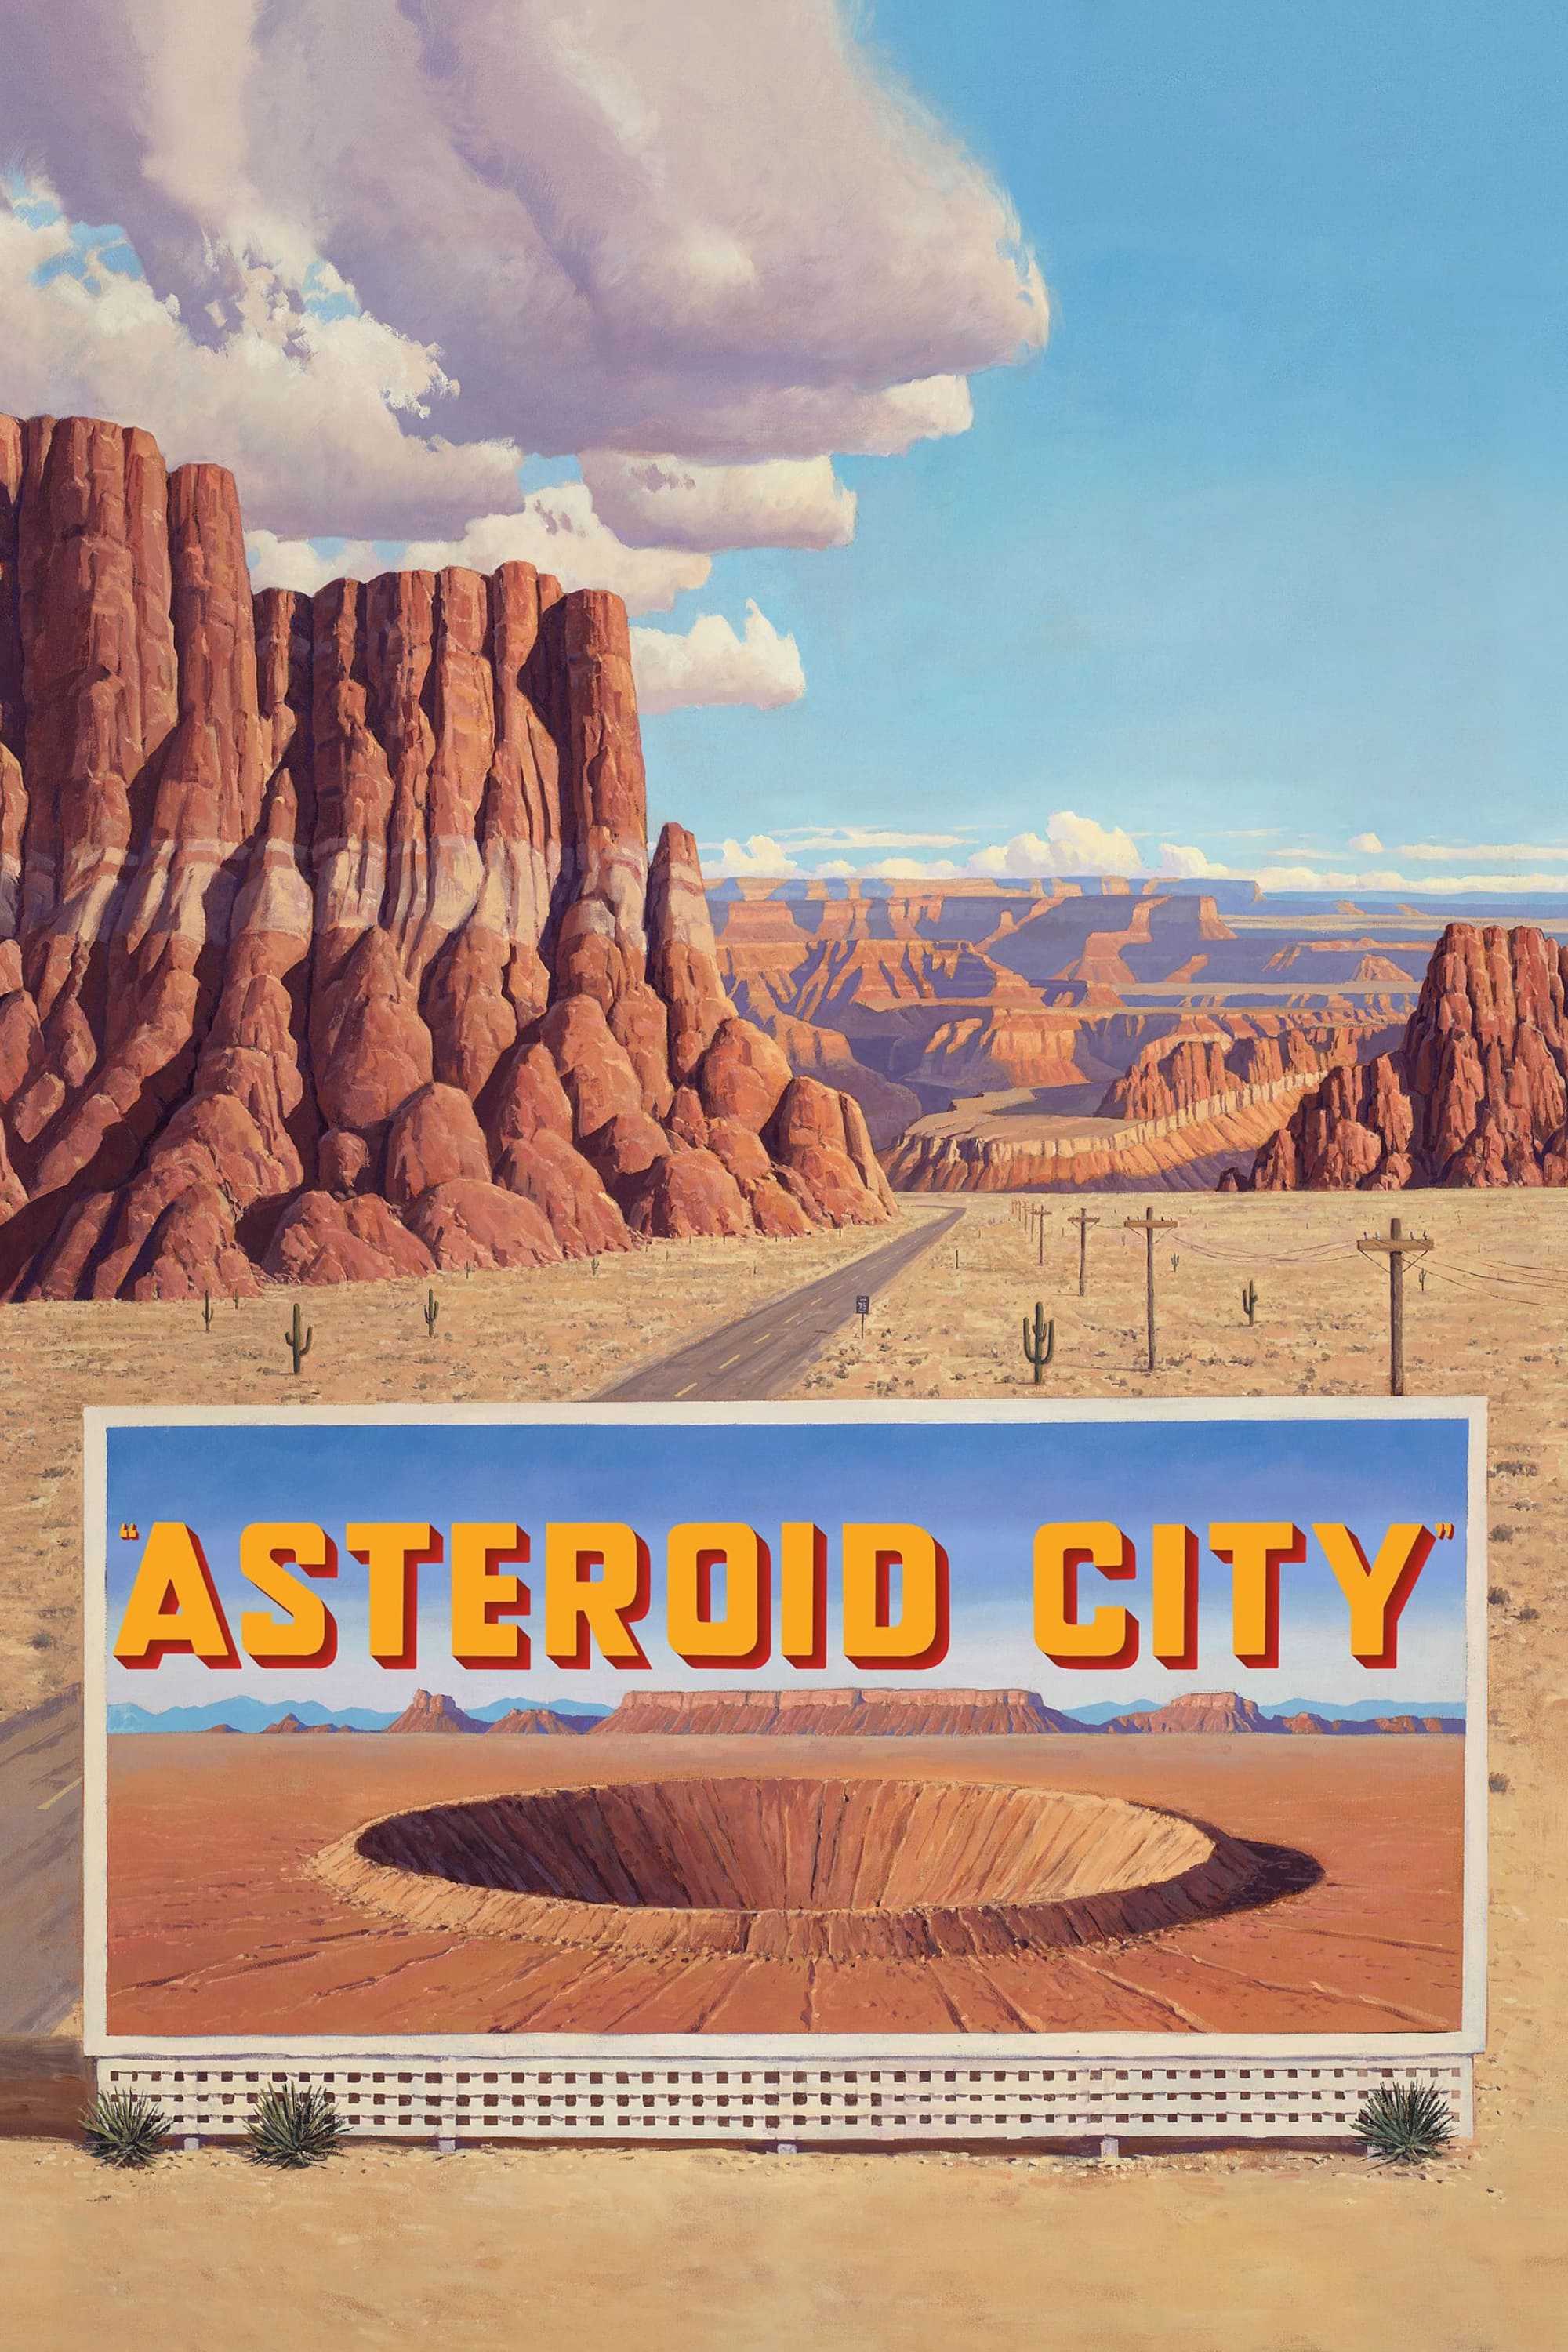 Thành phố sao chổi - Asteroid city